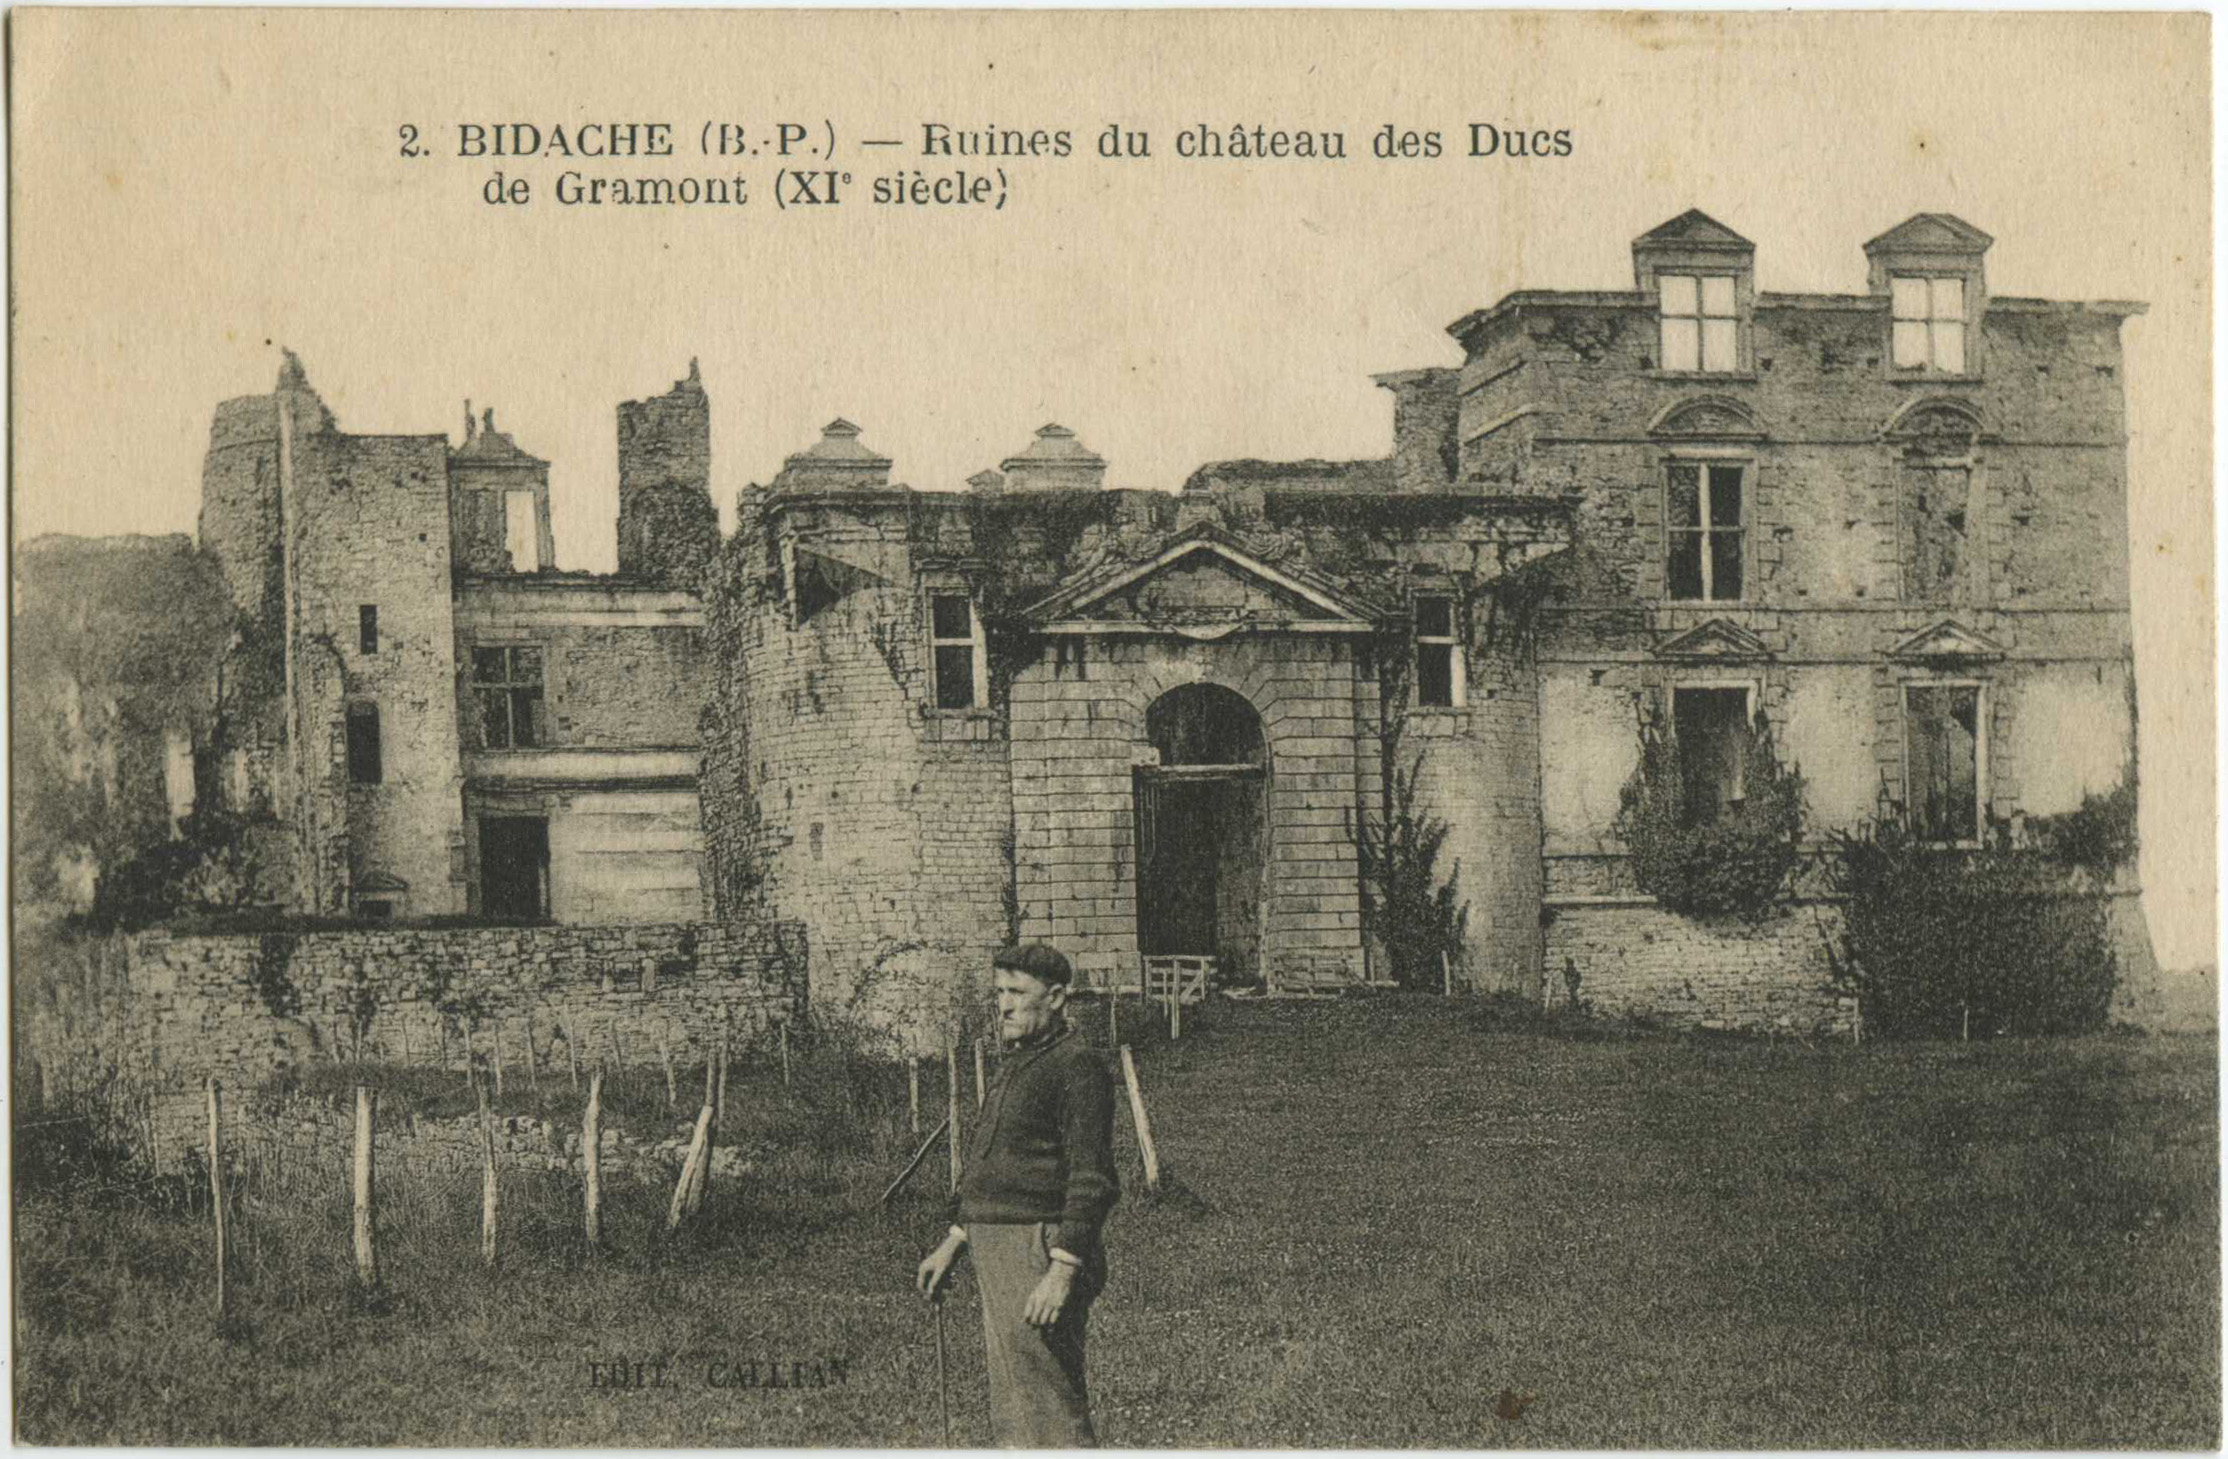 Bidache - Ruines du château des Ducs de Gramont (XI<sup>e</sup> siècle)